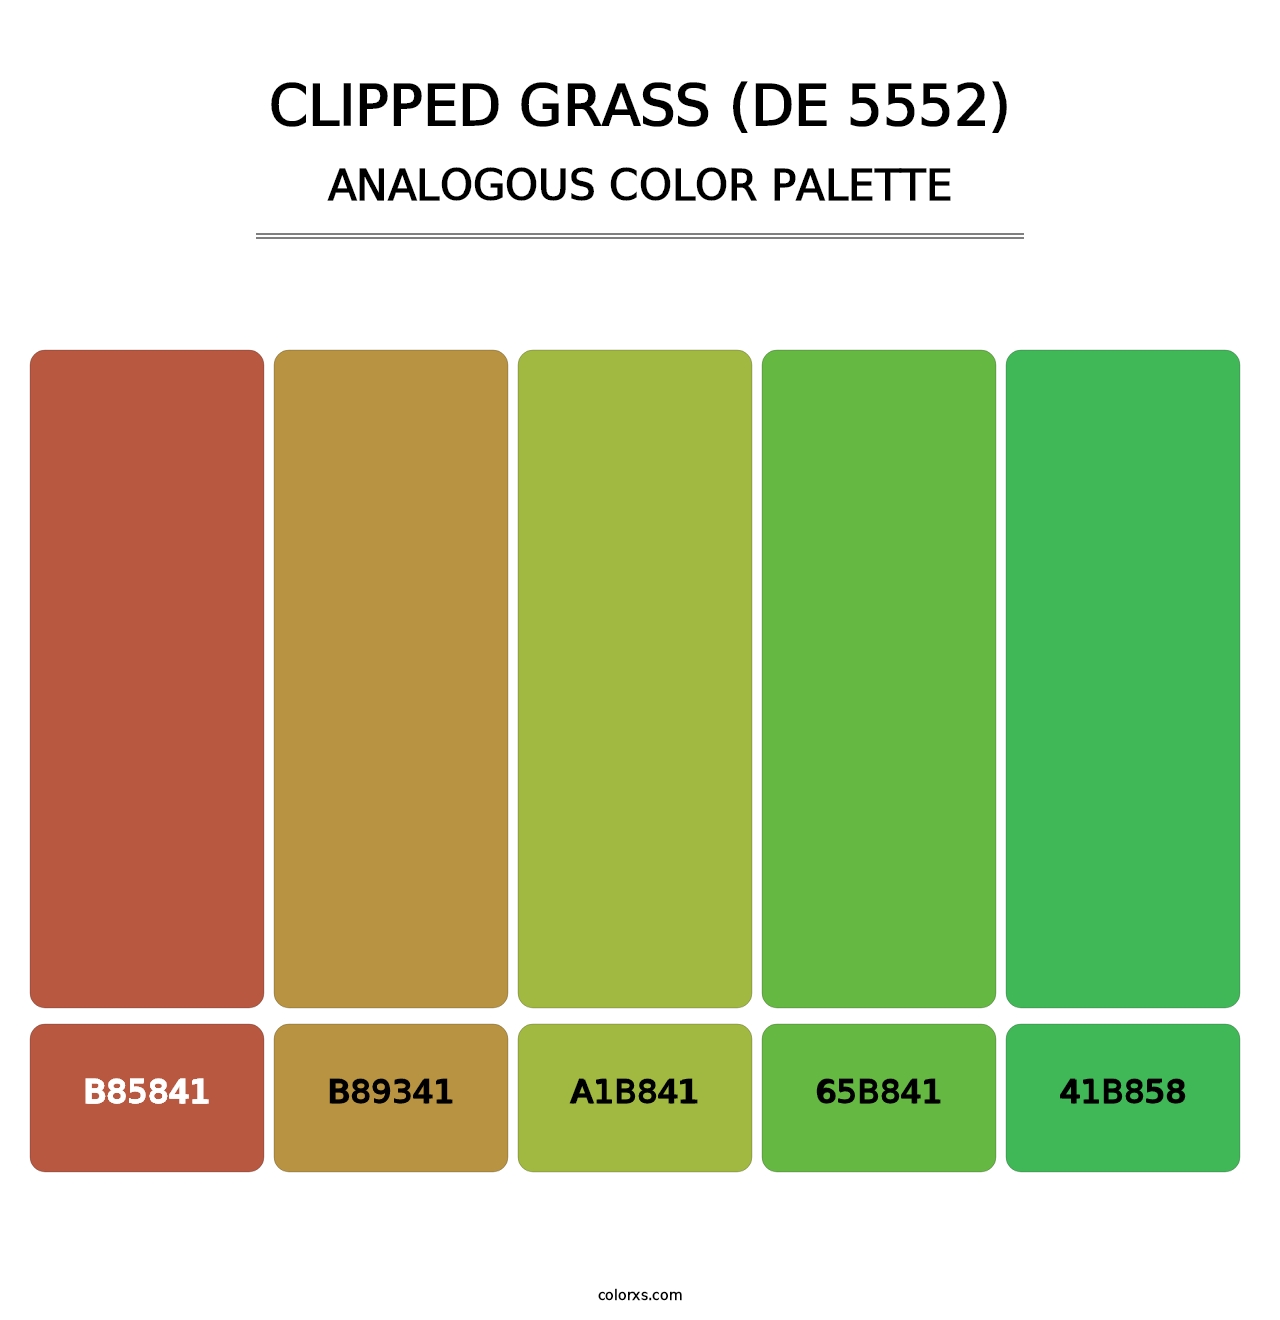 Clipped Grass (DE 5552) - Analogous Color Palette